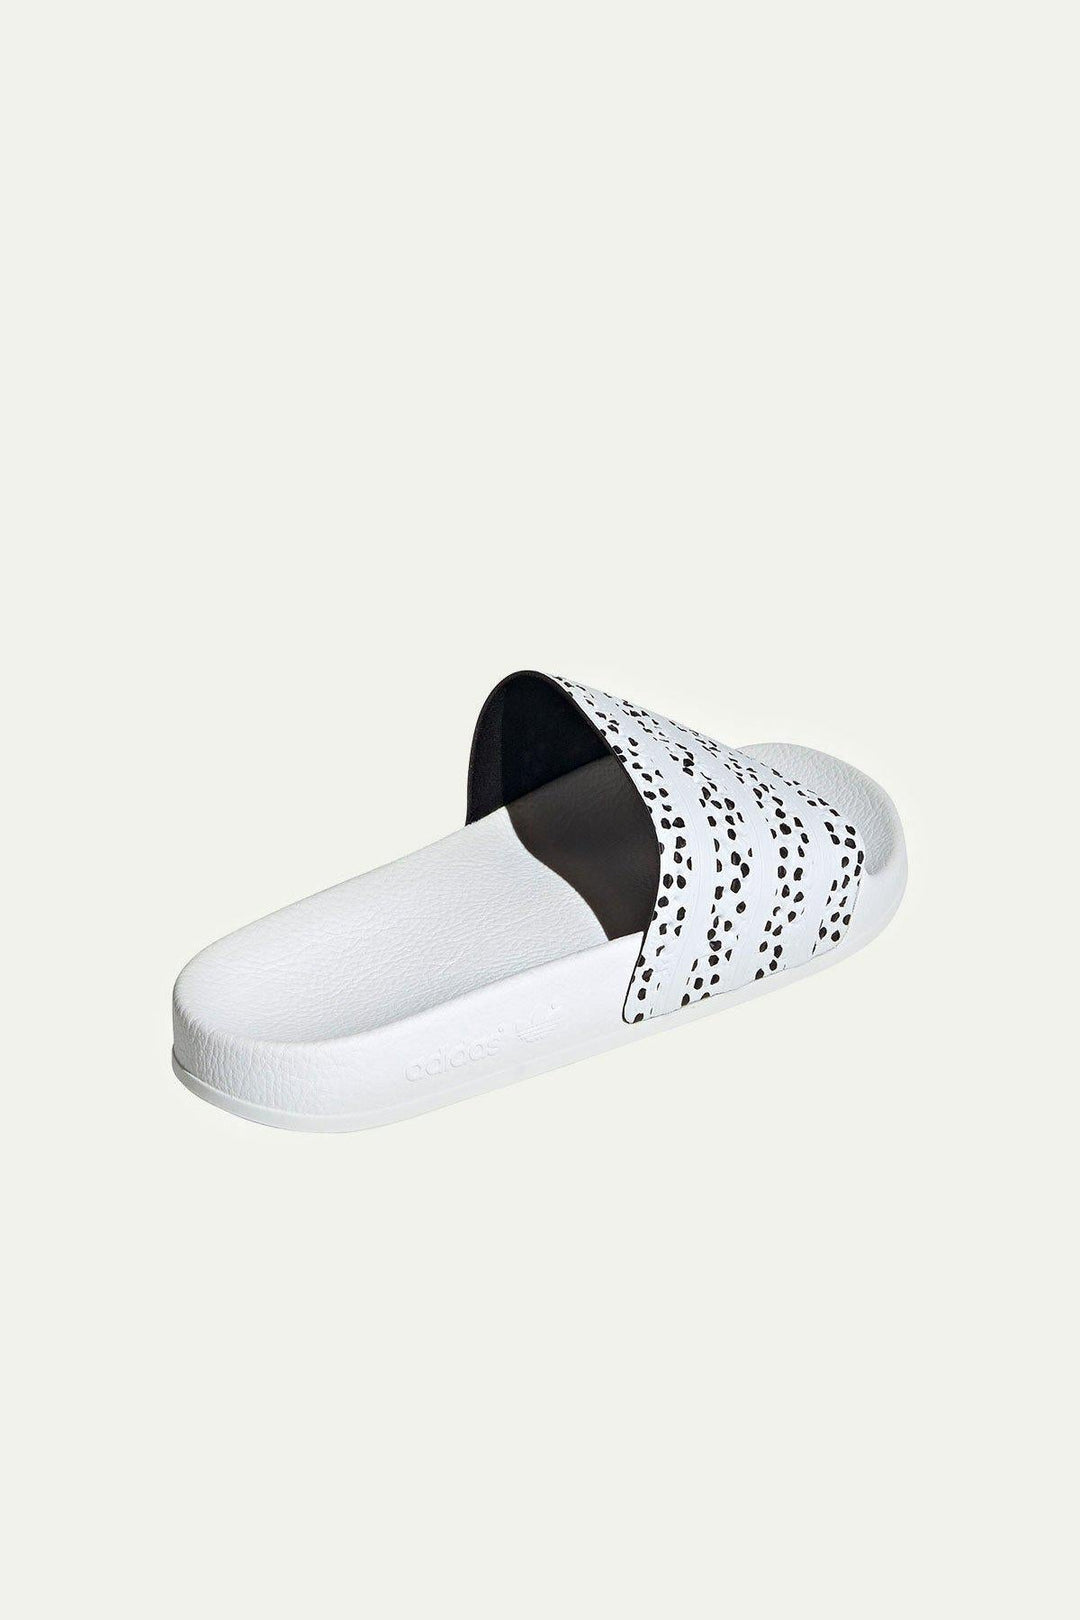 כפכפי סלייד בצבע לבן עם נקודות - Adidas